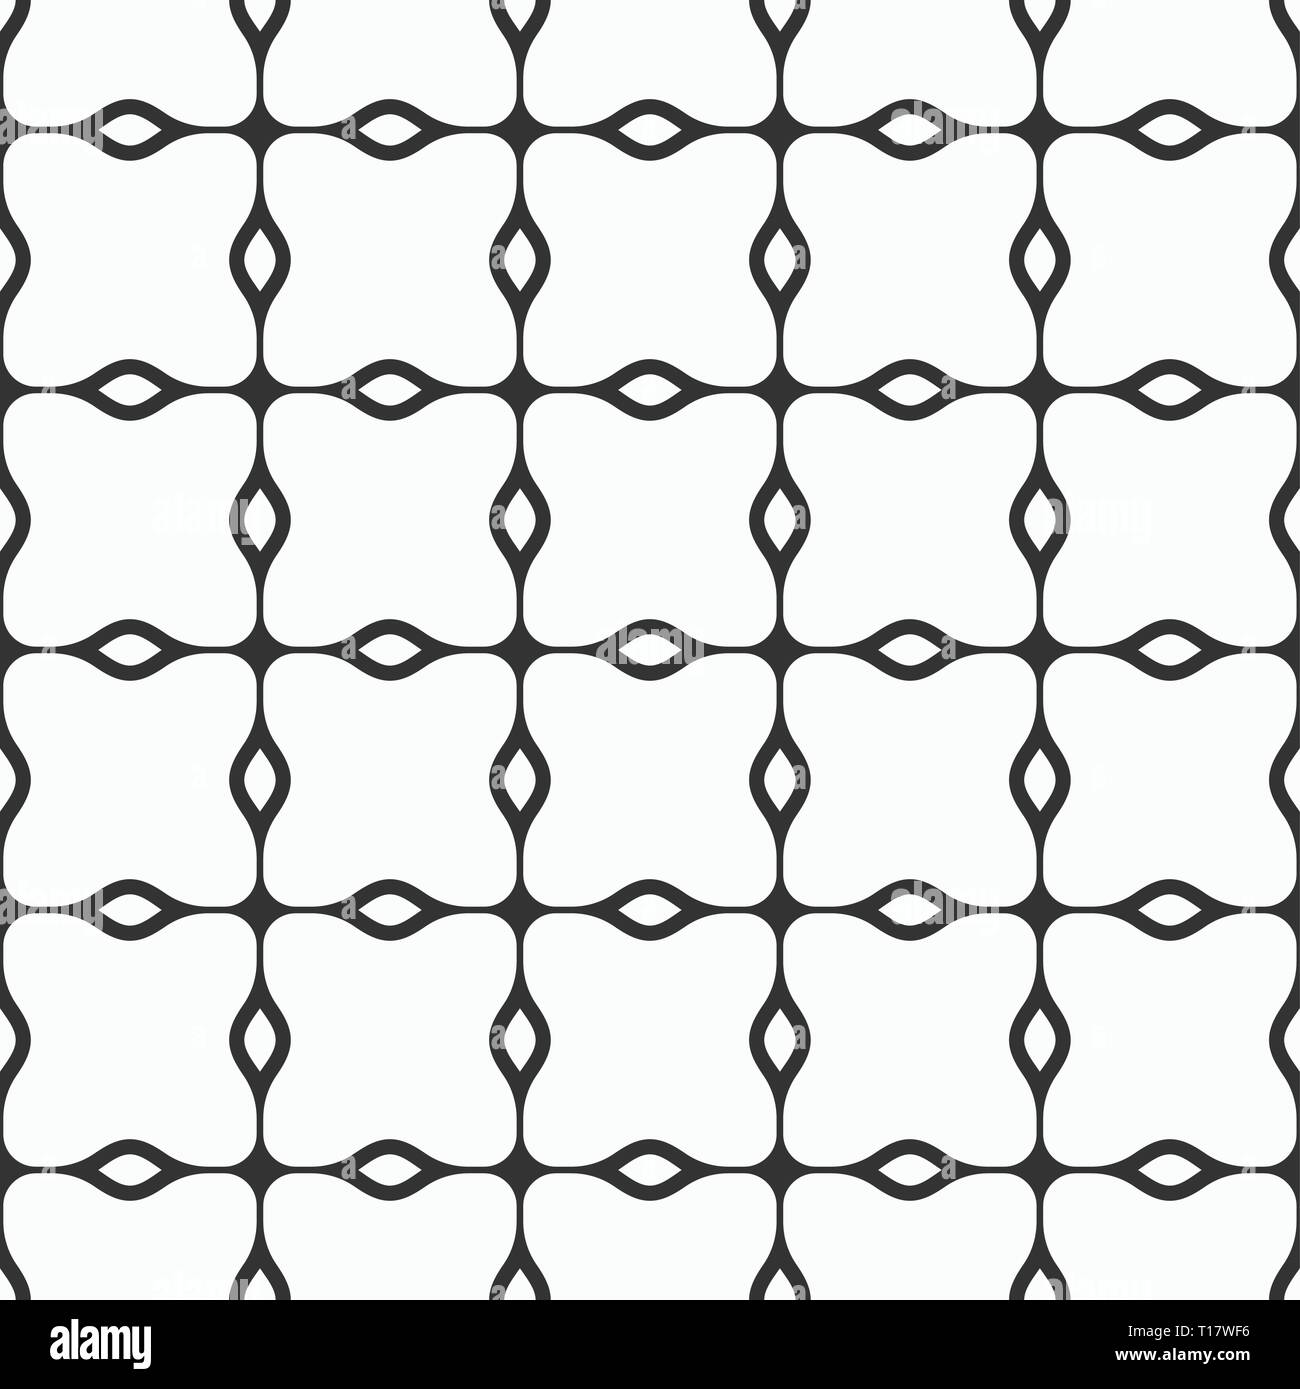 Abstract seamless disegno geometrico con strisce ondulate formando un  simmetrico griglia rettangolare. Moderna ed elegante struttura.  Ispessimento bande monocromatiche Immagine e Vettoriale - Alamy